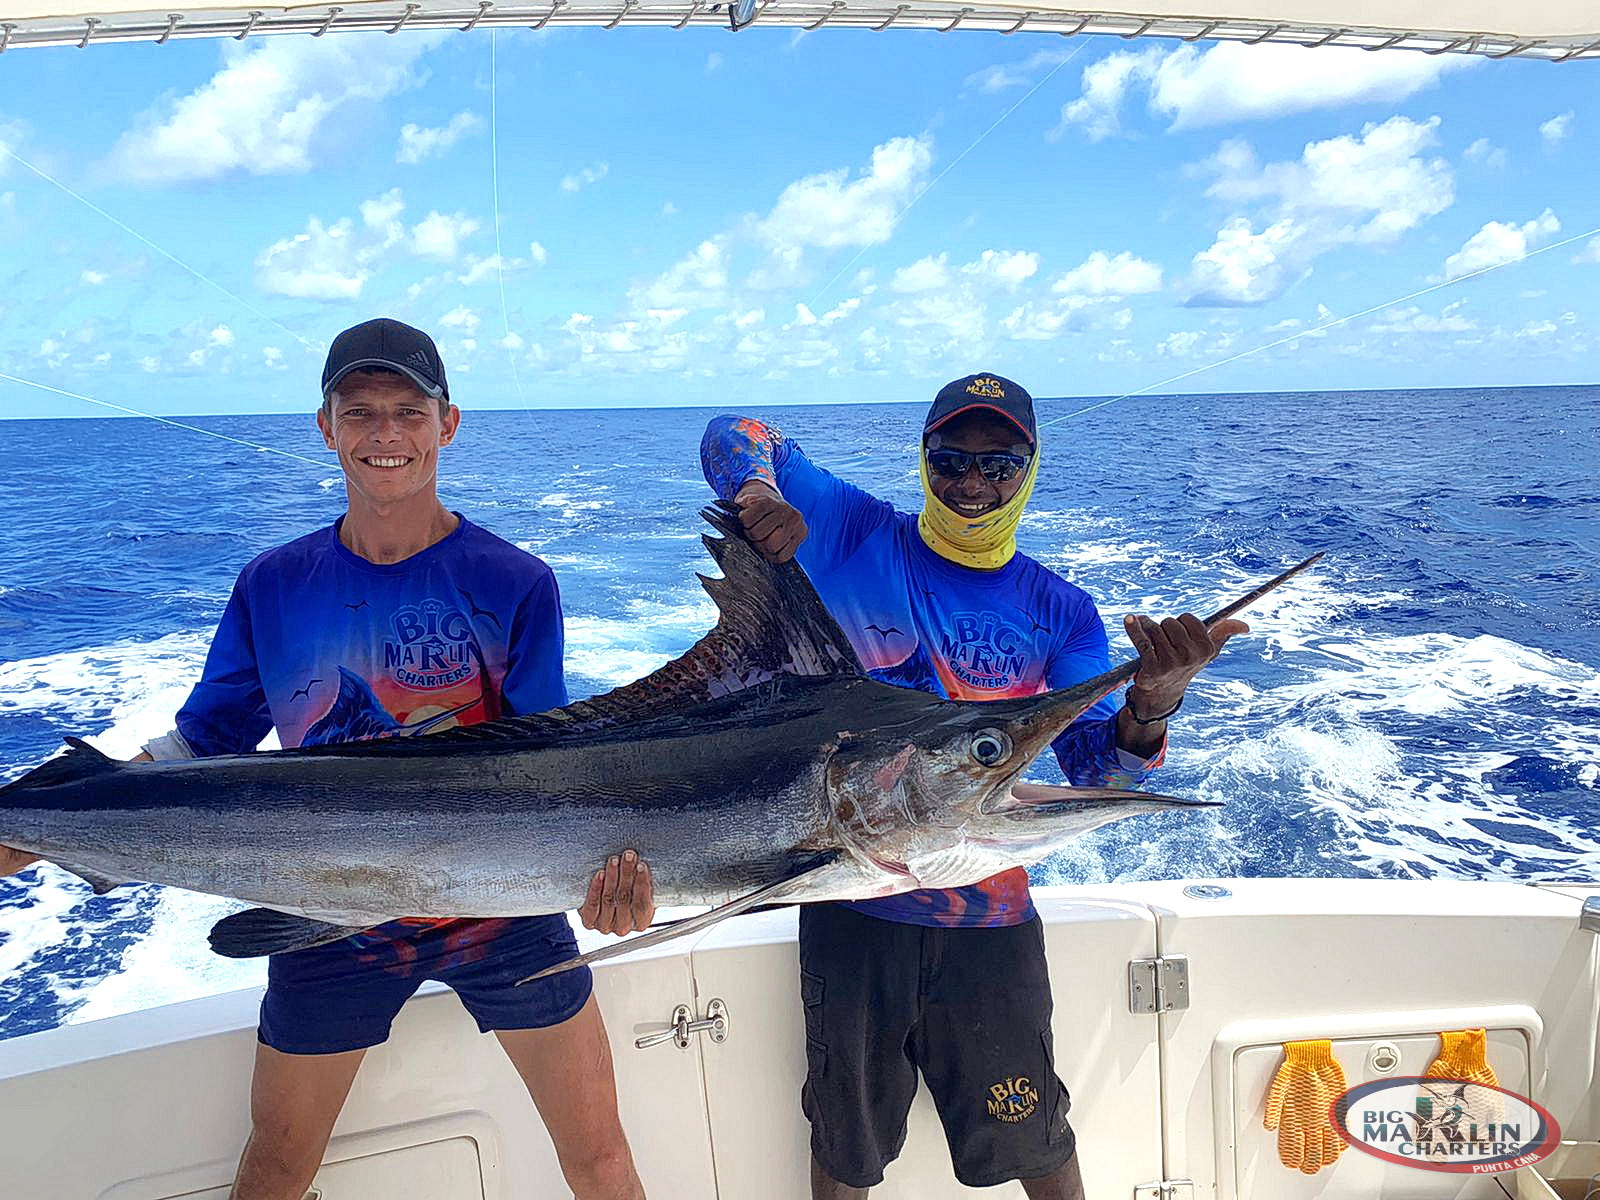 Fishing Calendar Dominican Republic - Deep sea fishing charters in Punta  Cana